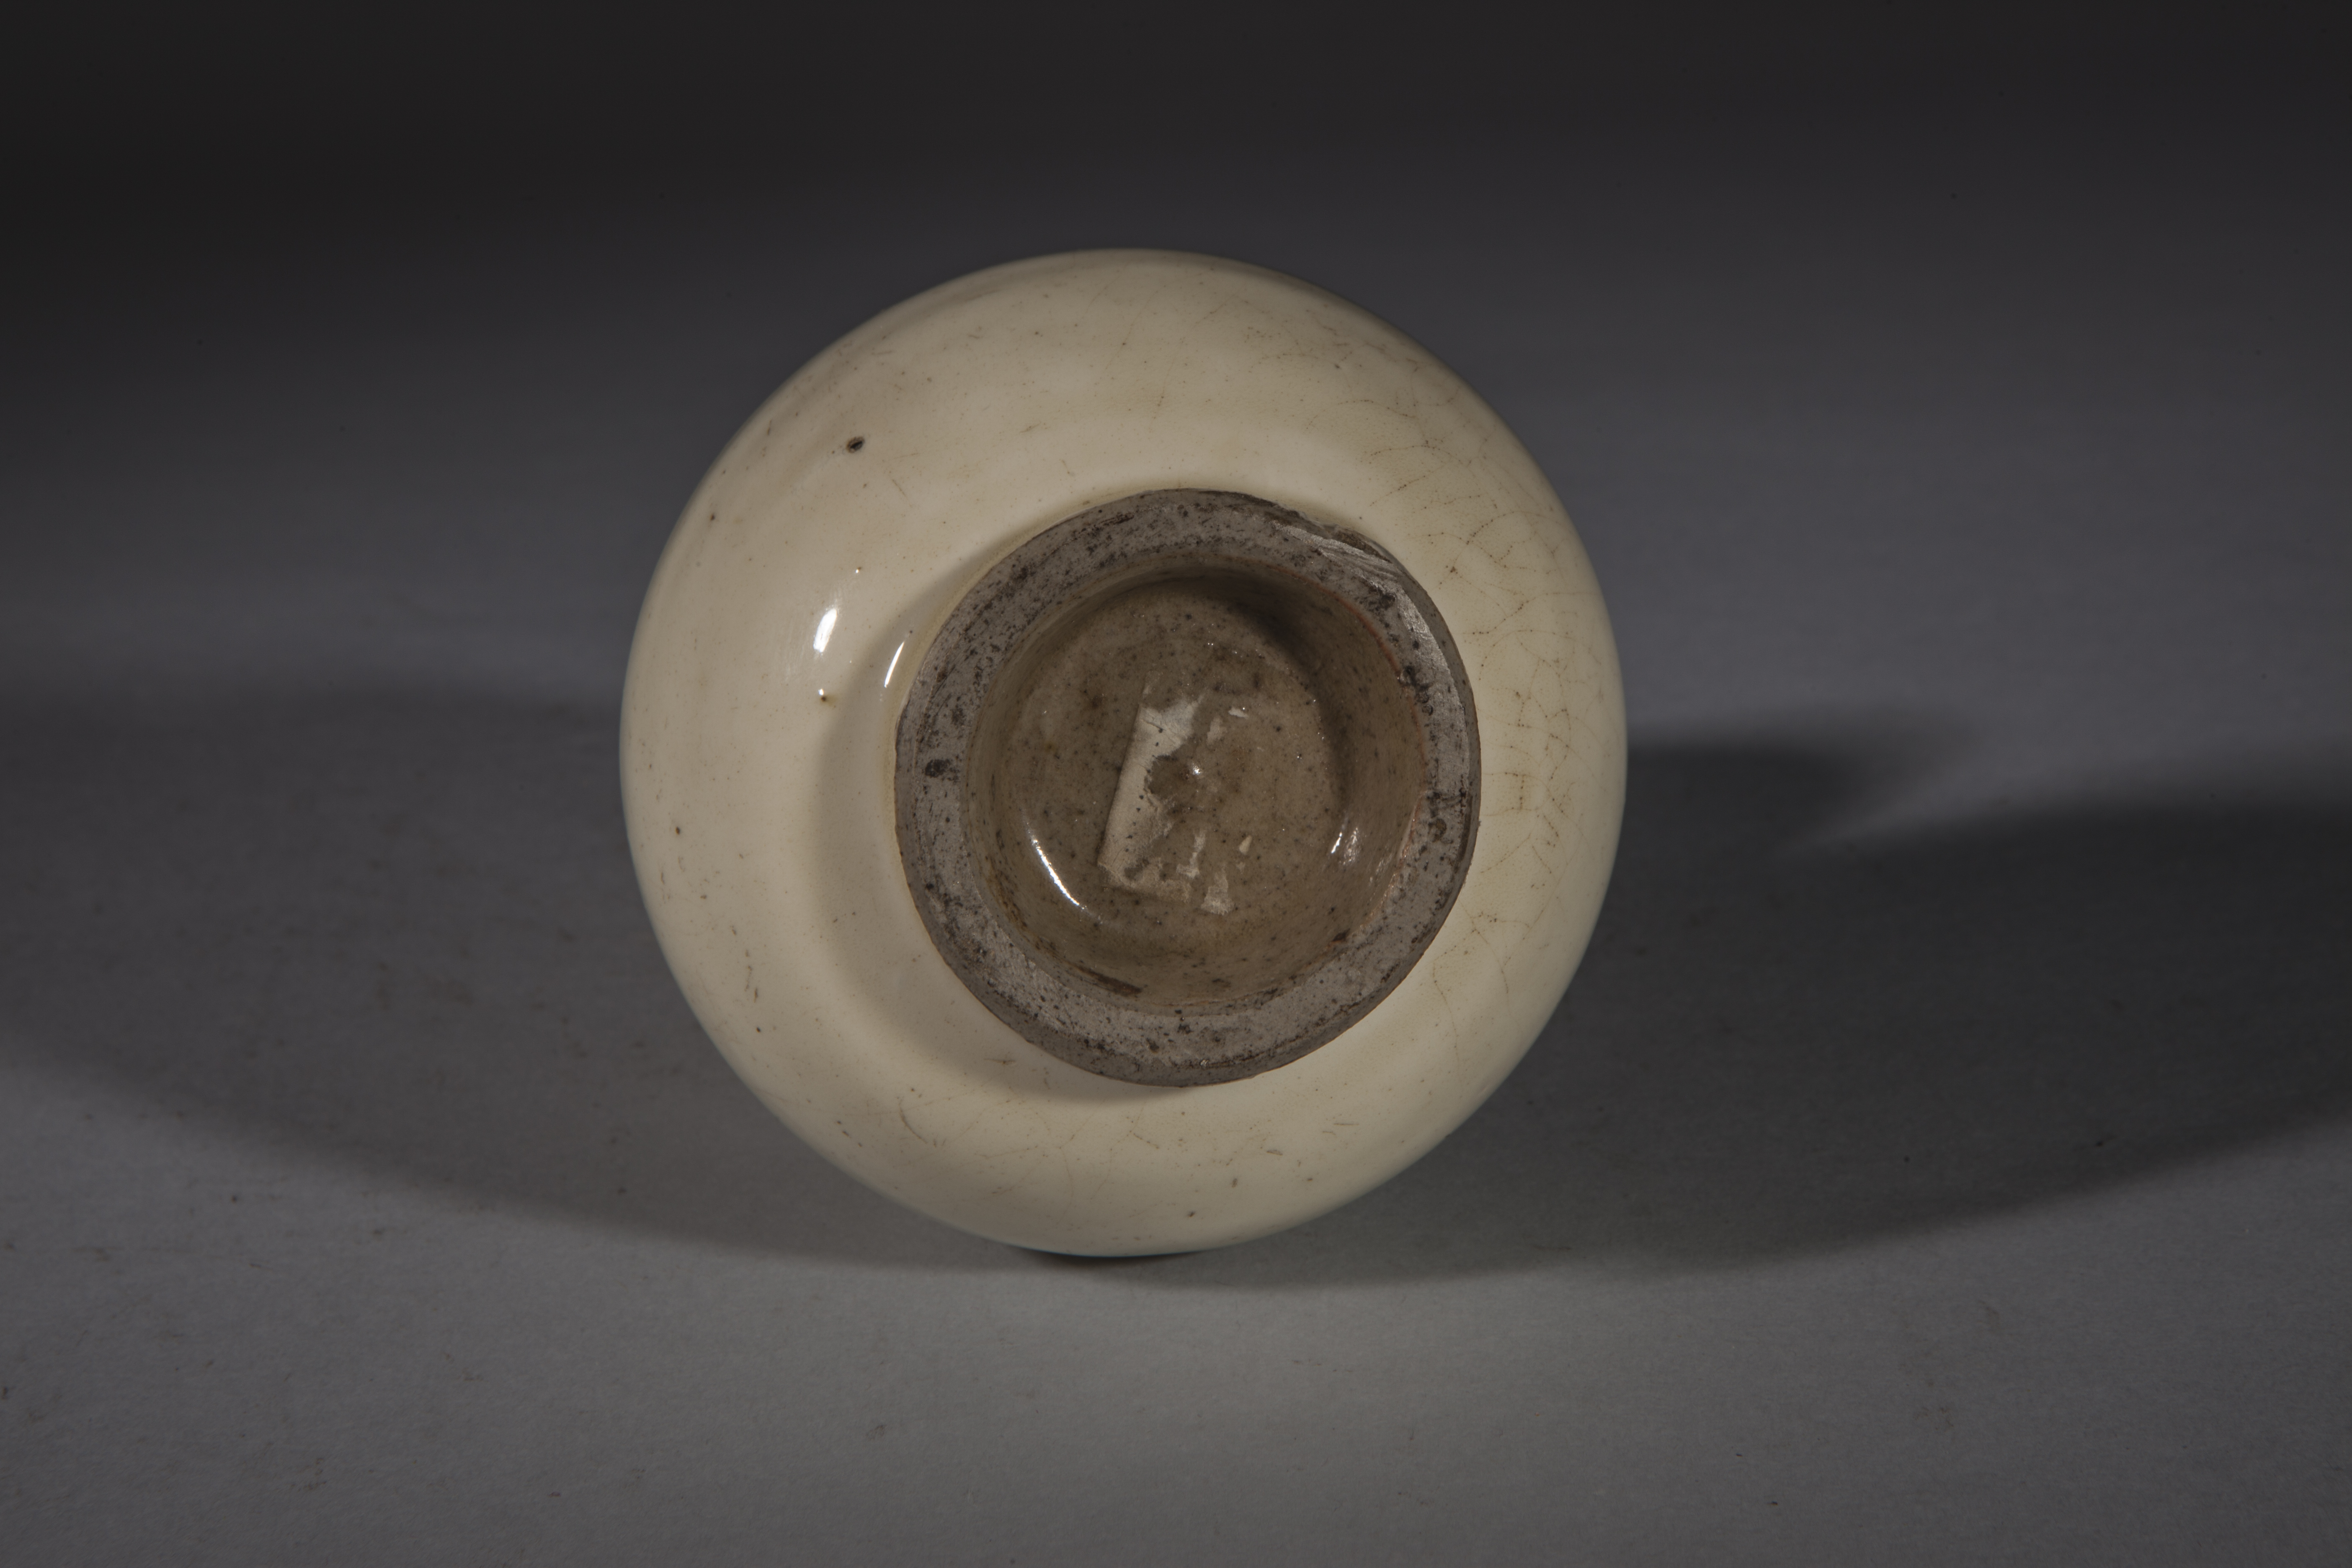 Vase double gourde en porcelaine à glaçure monochrome blanche Chine Dynastie Qing 18 ème siècle Ht - Image 2 of 2